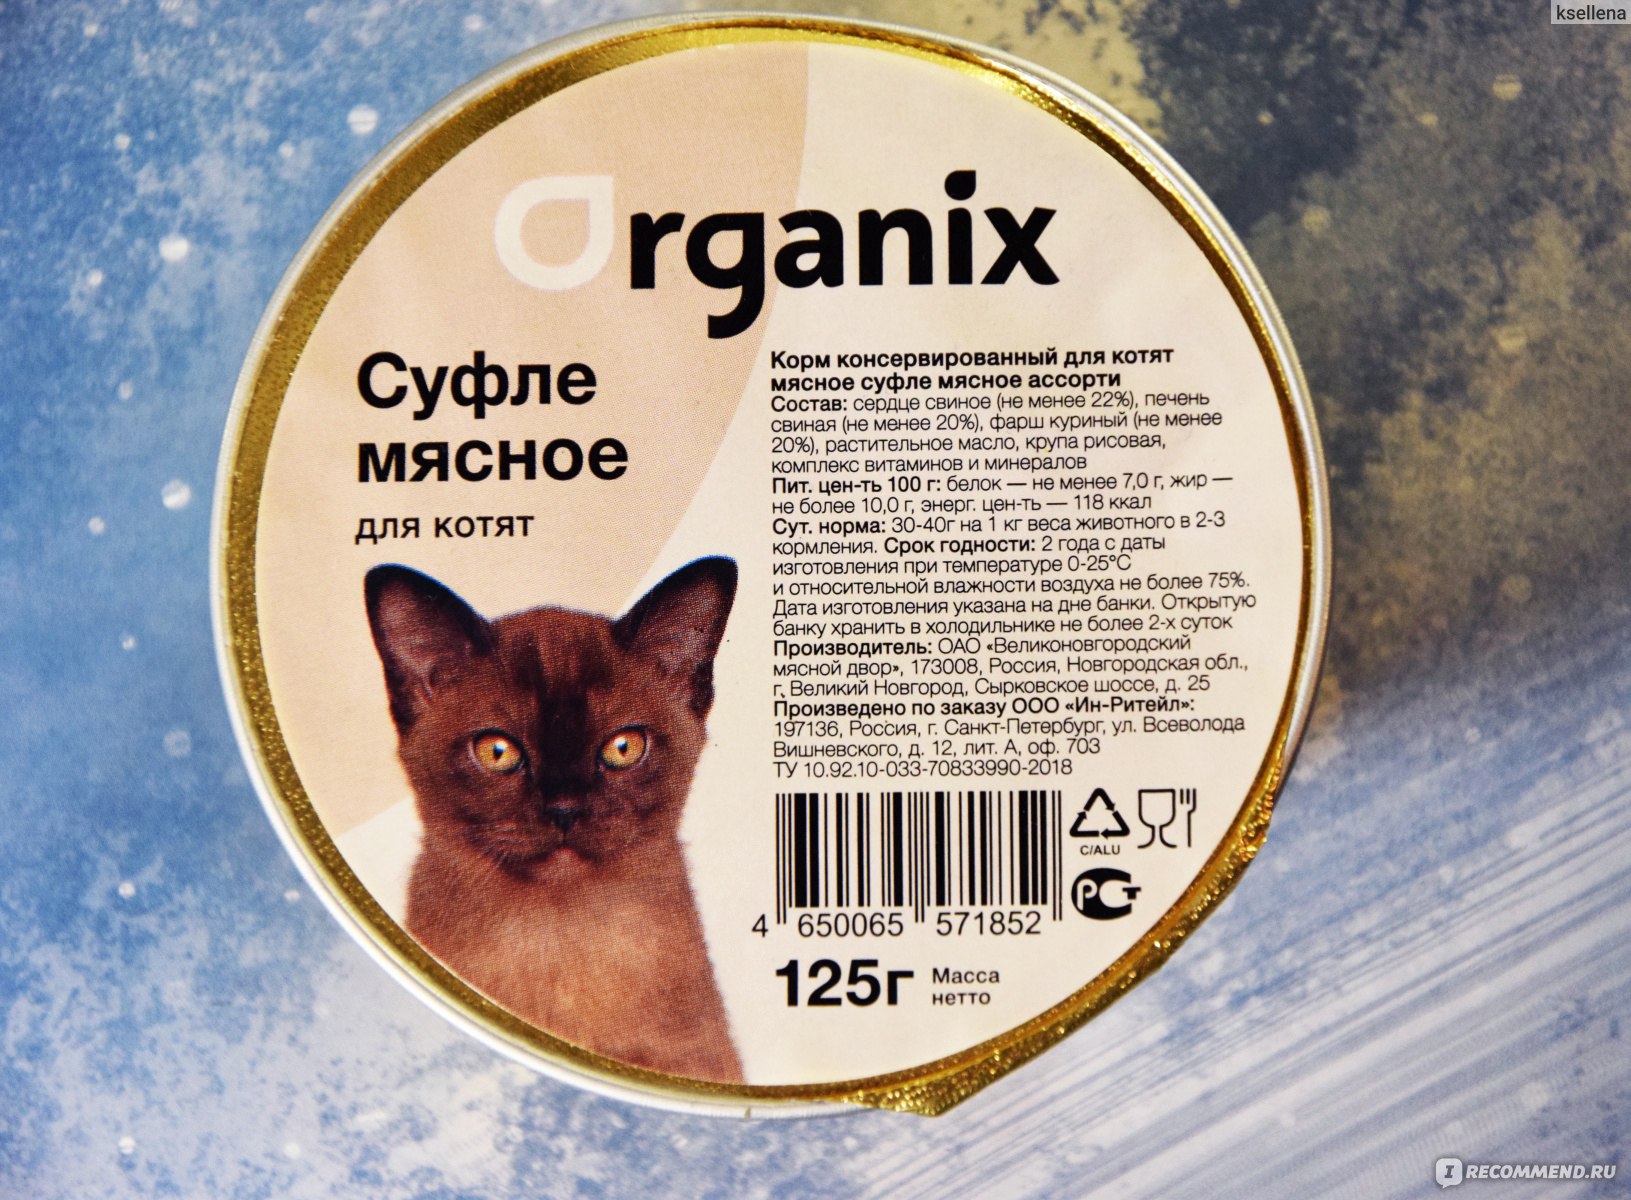 Органикс (корм для кошек): состав рационов